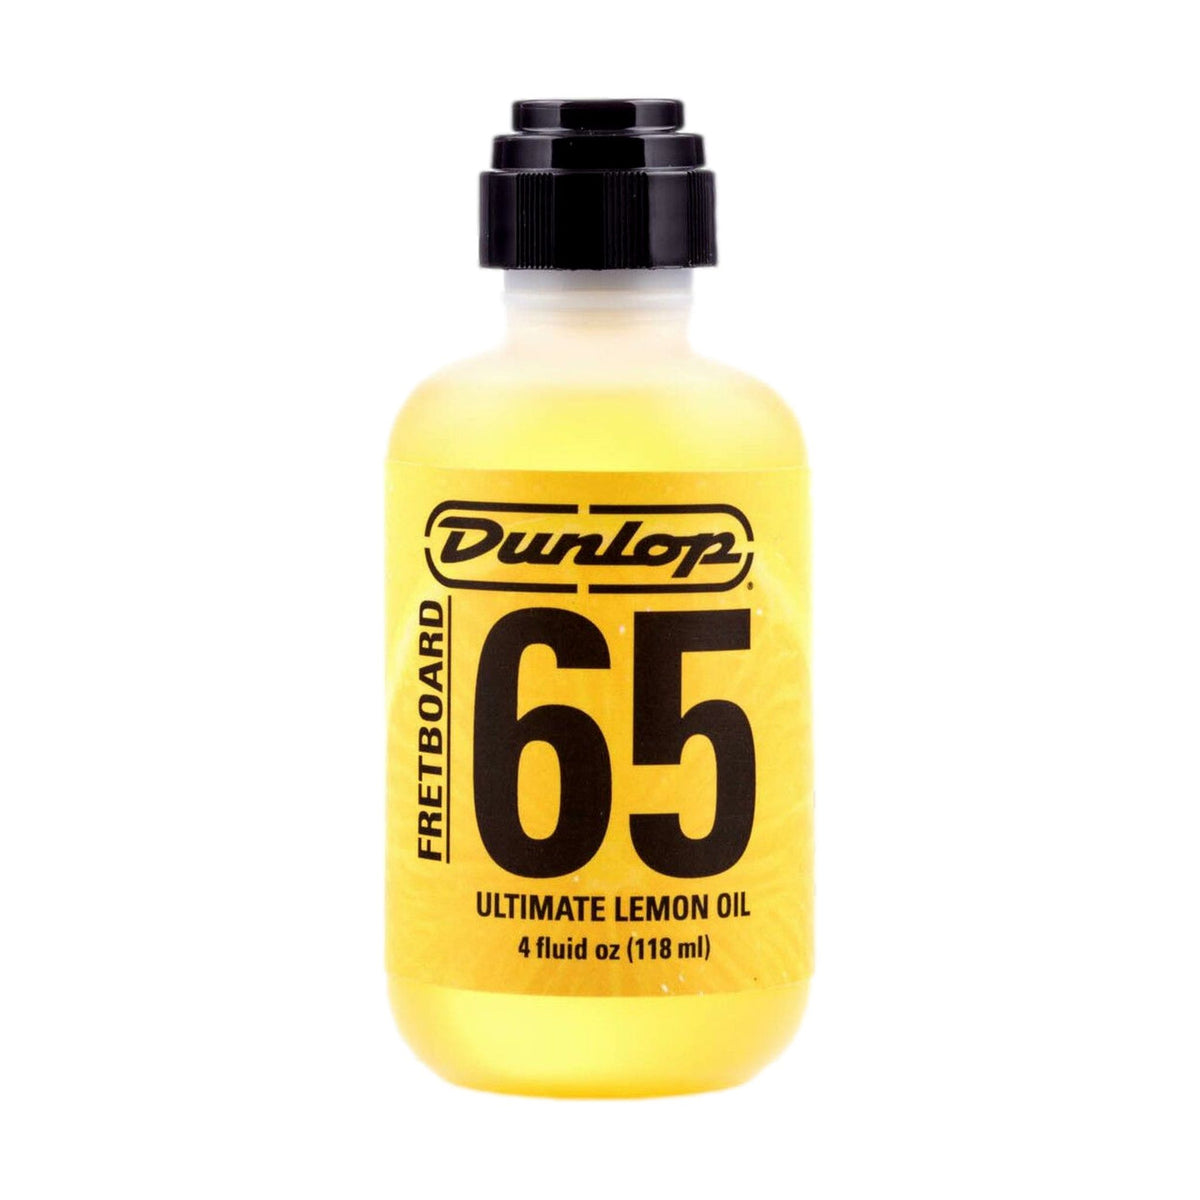 Dunlop Ultimate Lemon Oil 118ml